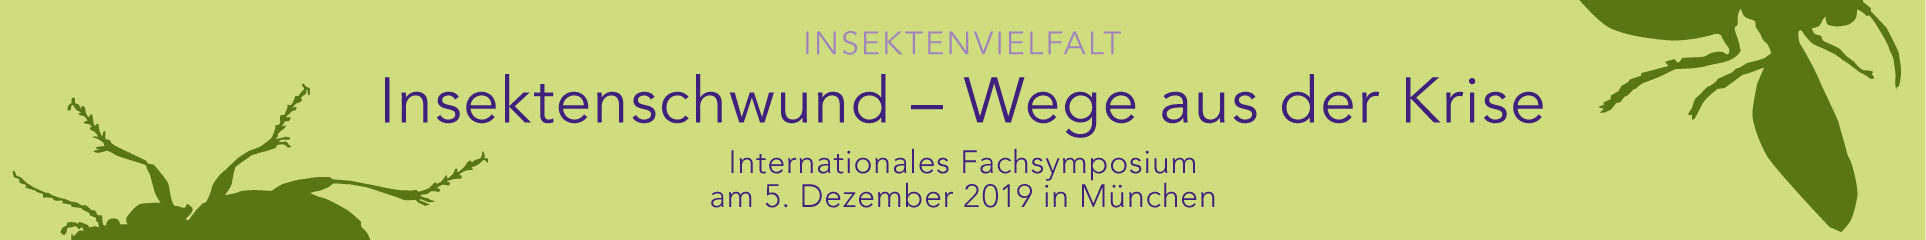 Schwerpunktthema 2019 Insektenvielfalt. Insektenschwund: Wege aus der Krise internationales Fachsymposium am 5. Dezember 2019 in München.